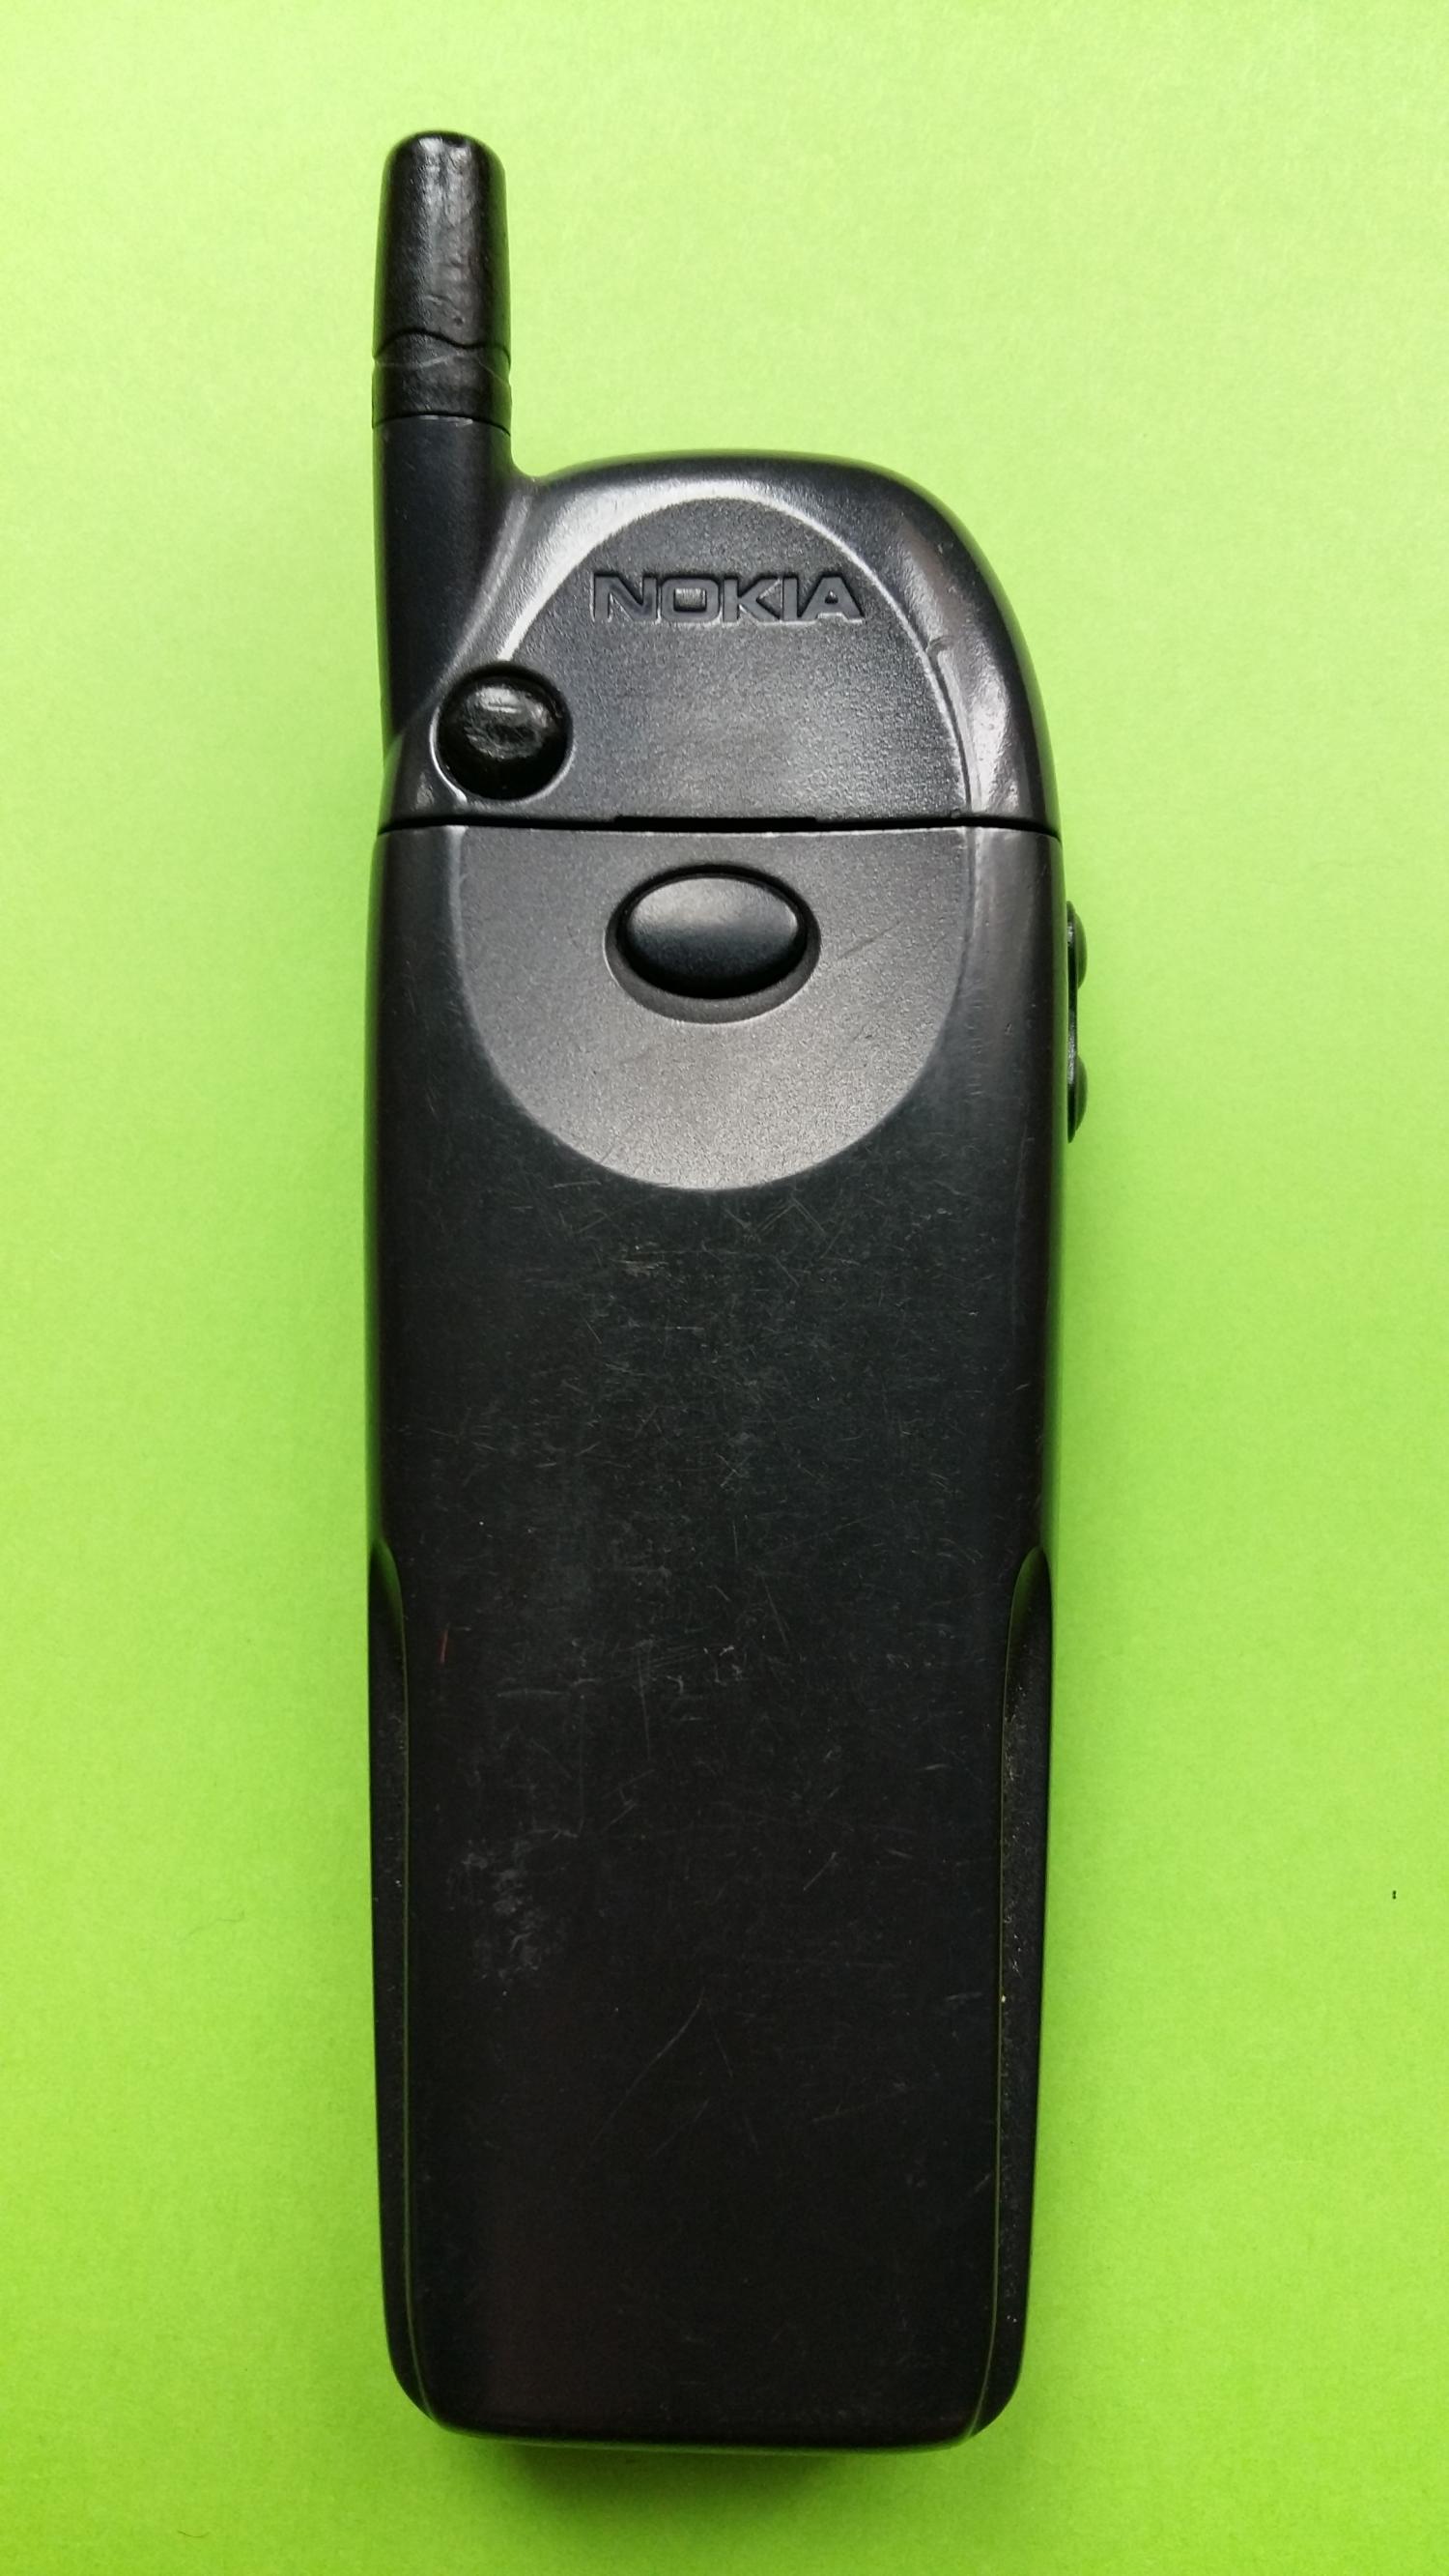 image-7305011-Nokia 6110 (10)2.jpg